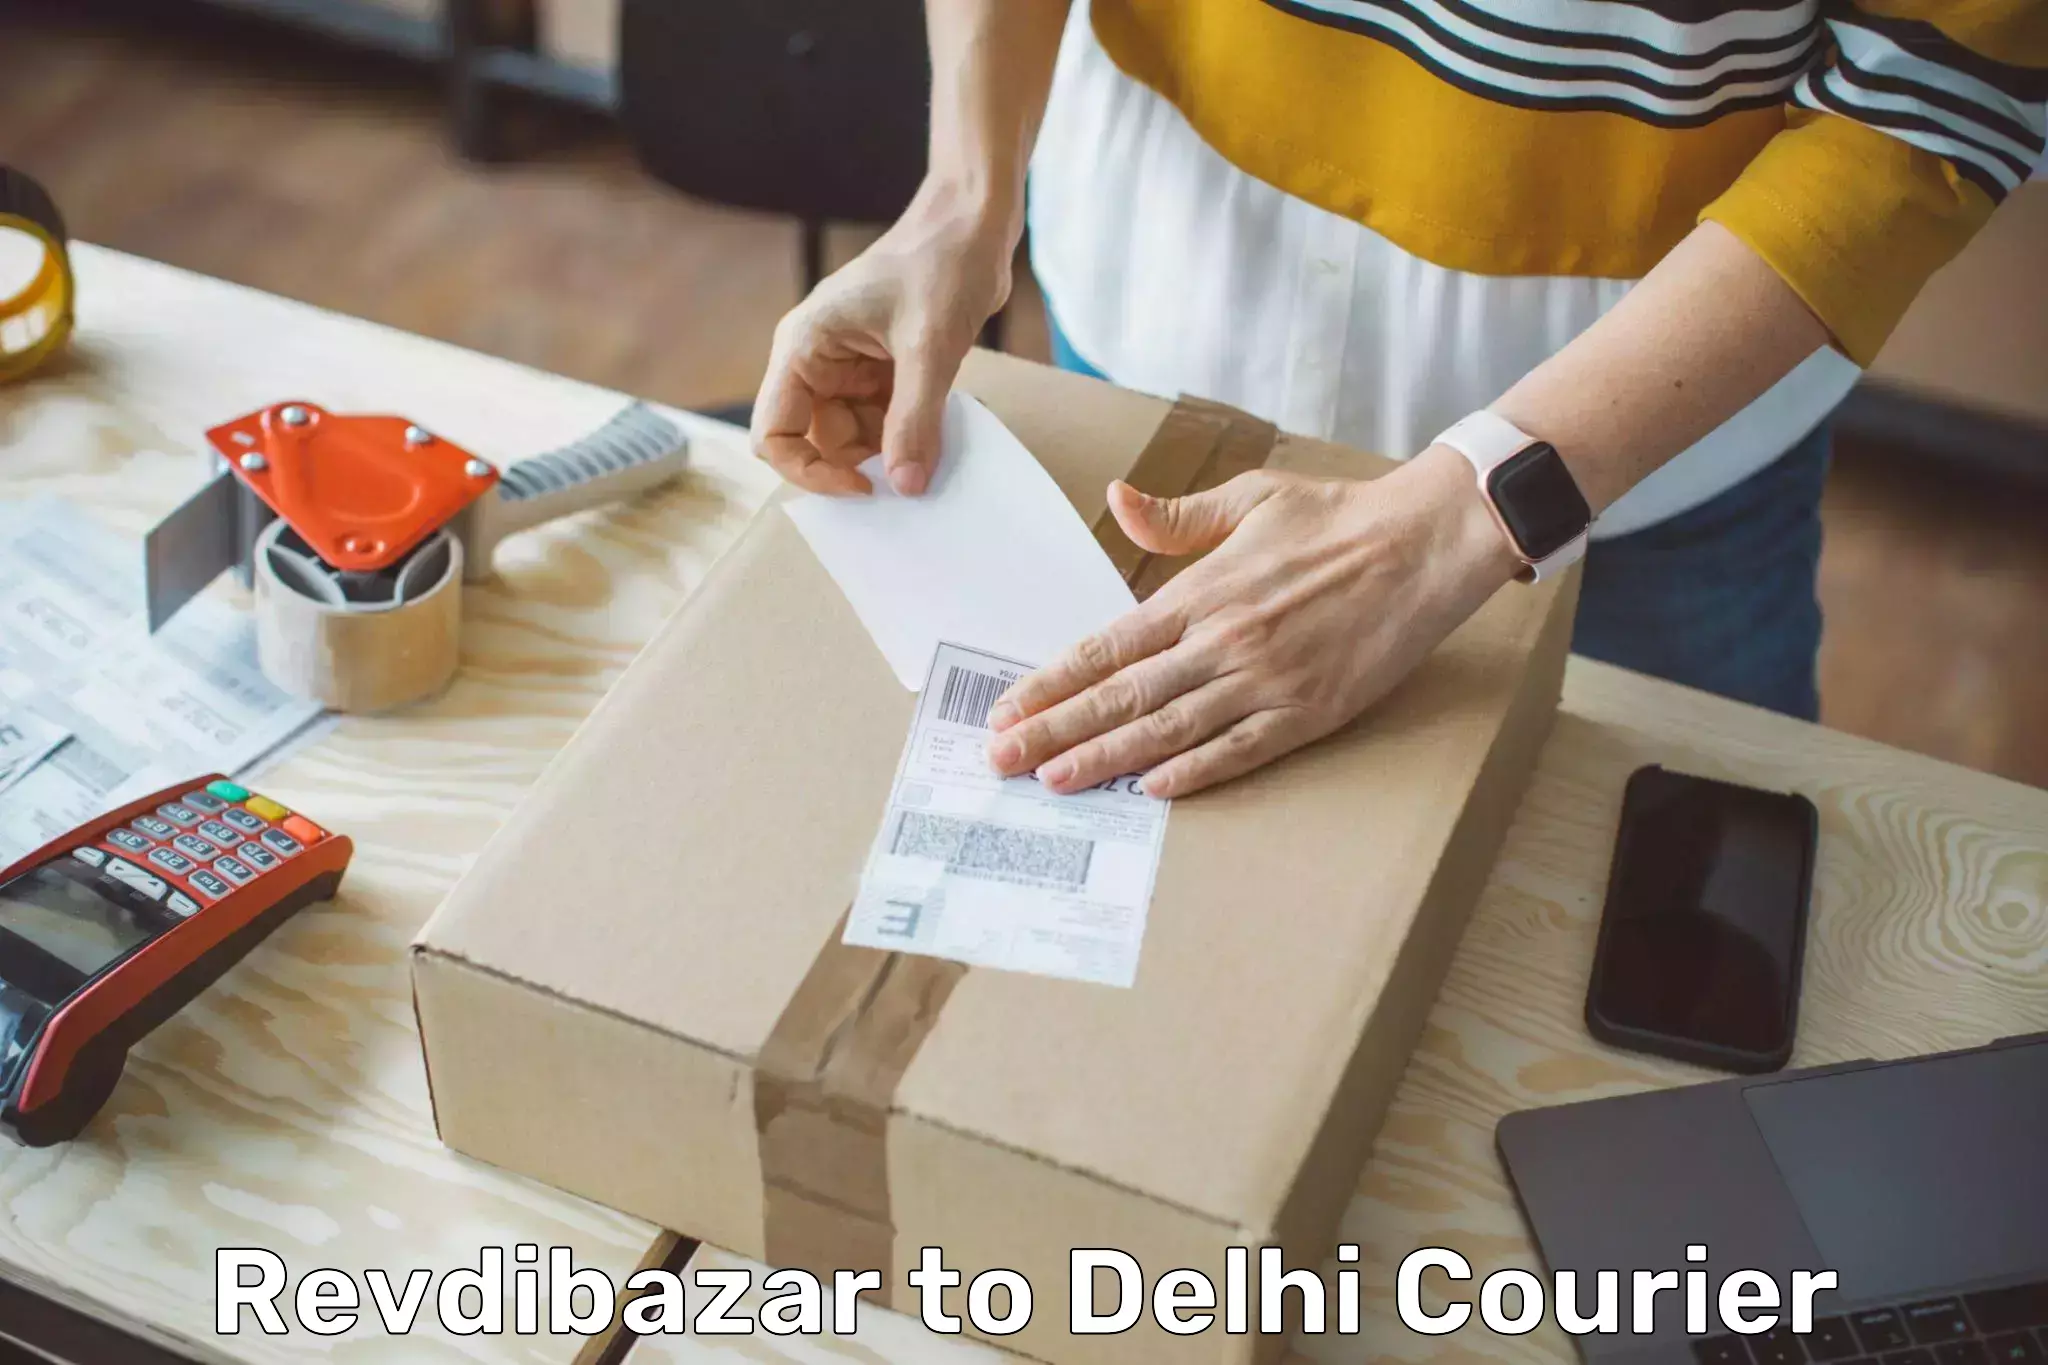 Small parcel delivery in Revdibazar to IIT Delhi